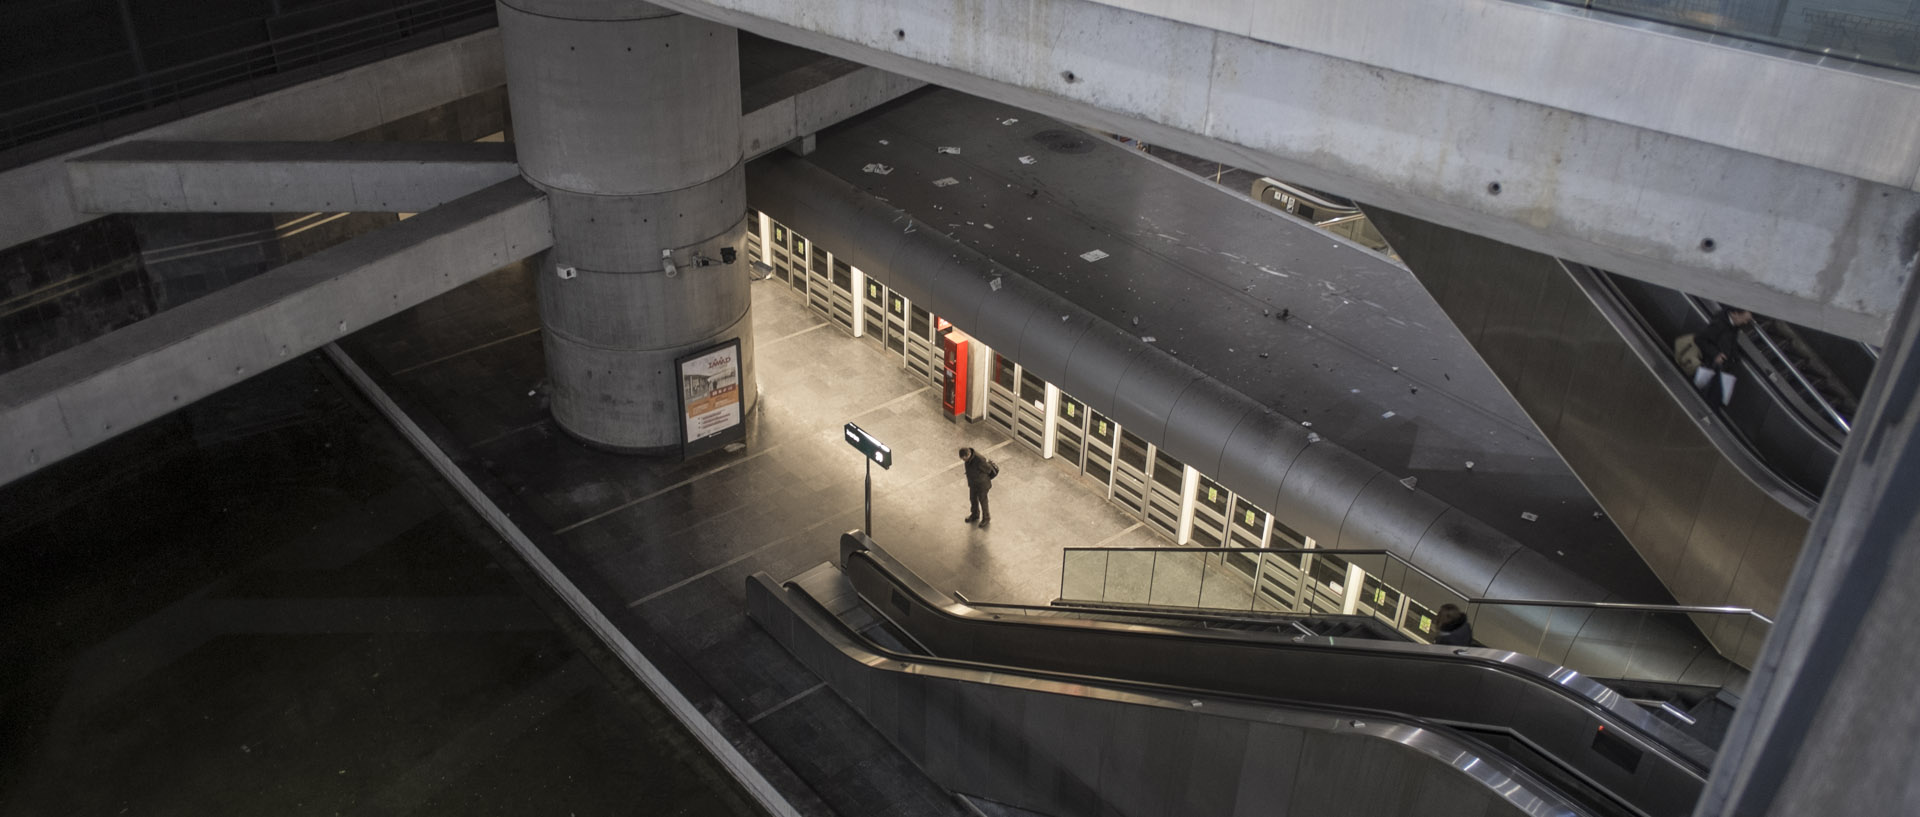 Lundi 12 janvier 2015, 18:32, station de métro Lille Europe